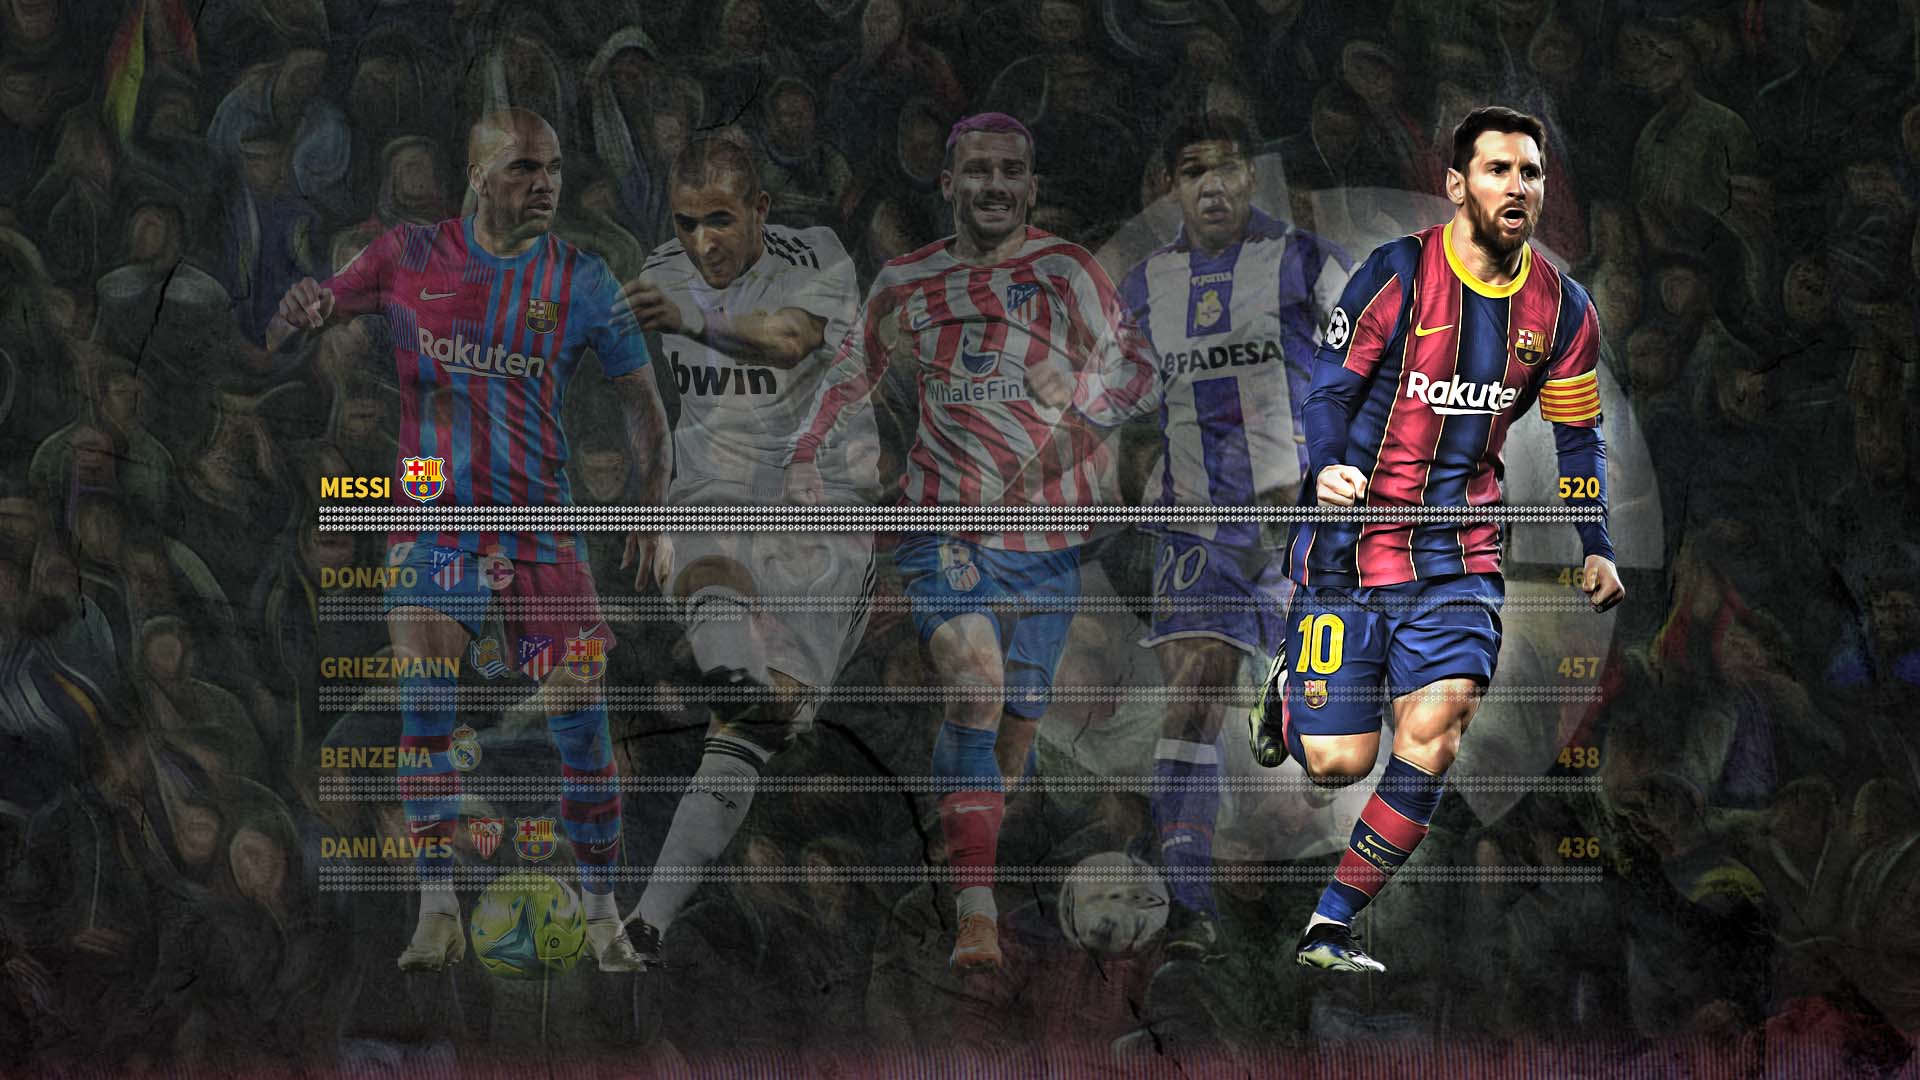 Messi (Argentina) 520